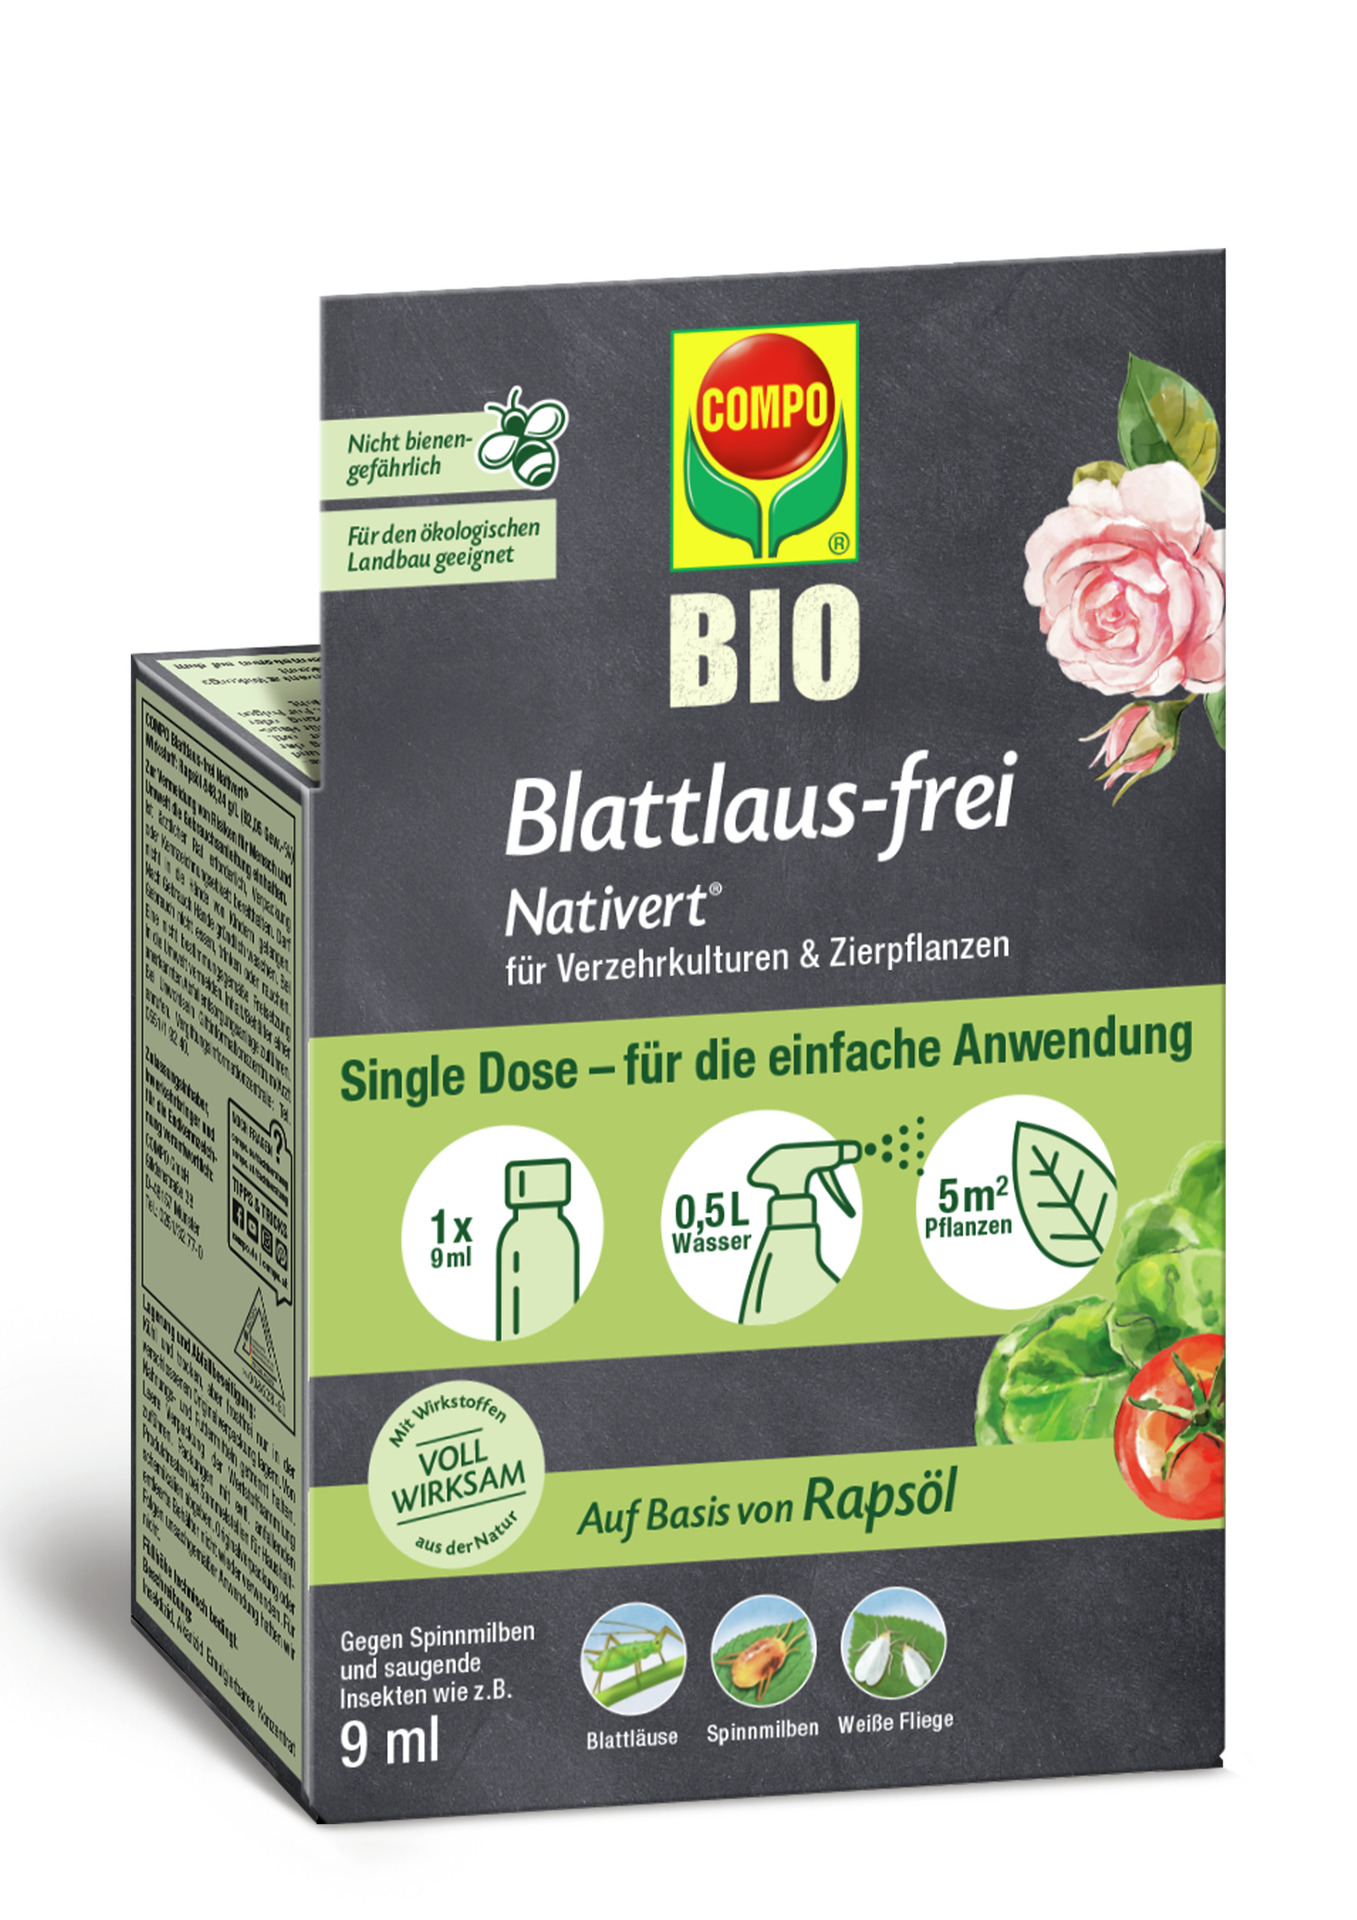 Compo GmbH Blattlaus-frei Nativert®